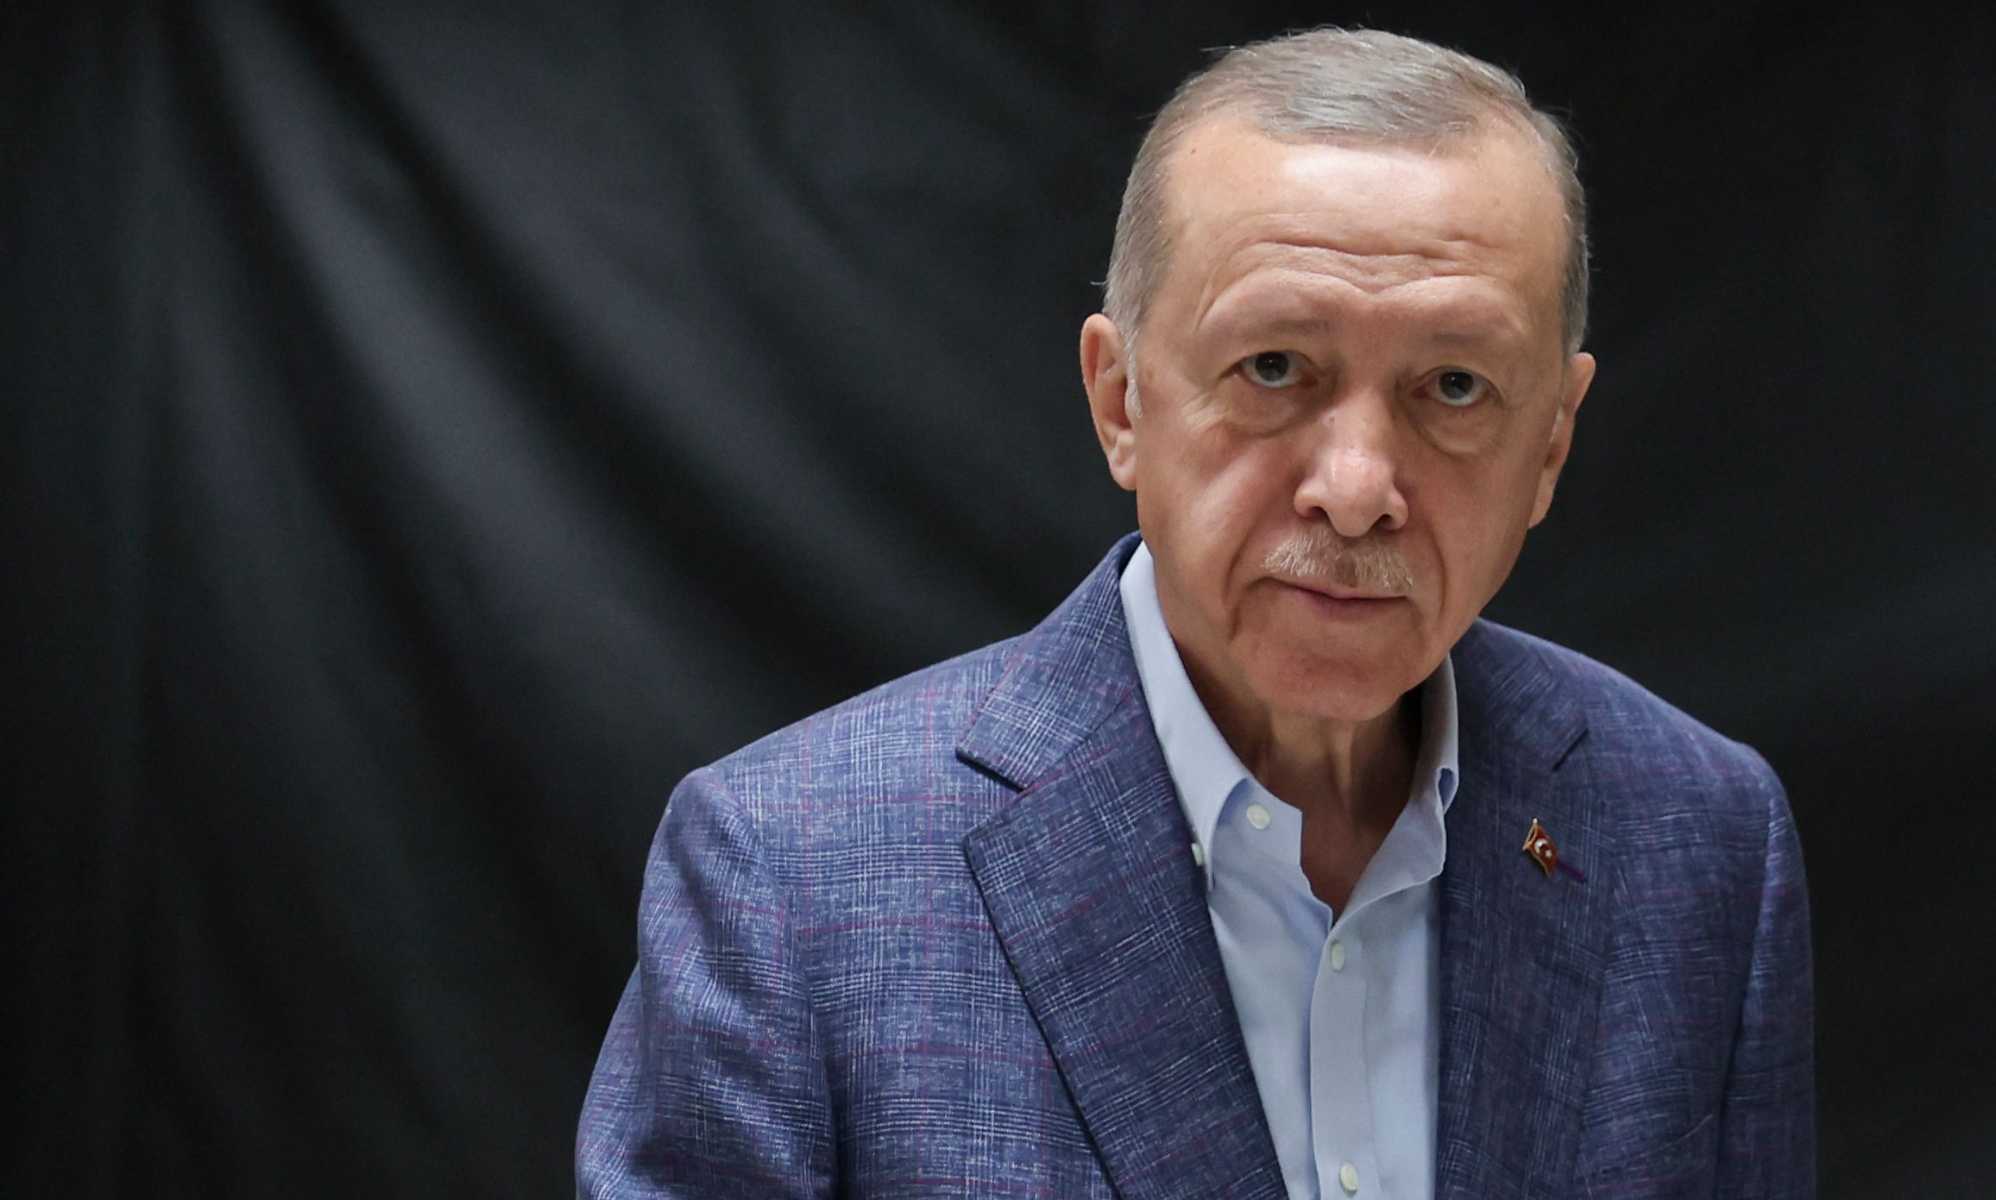 El presidente turco Erdoğan y sus opiniones anti-LGBTQ+ vergonzosas